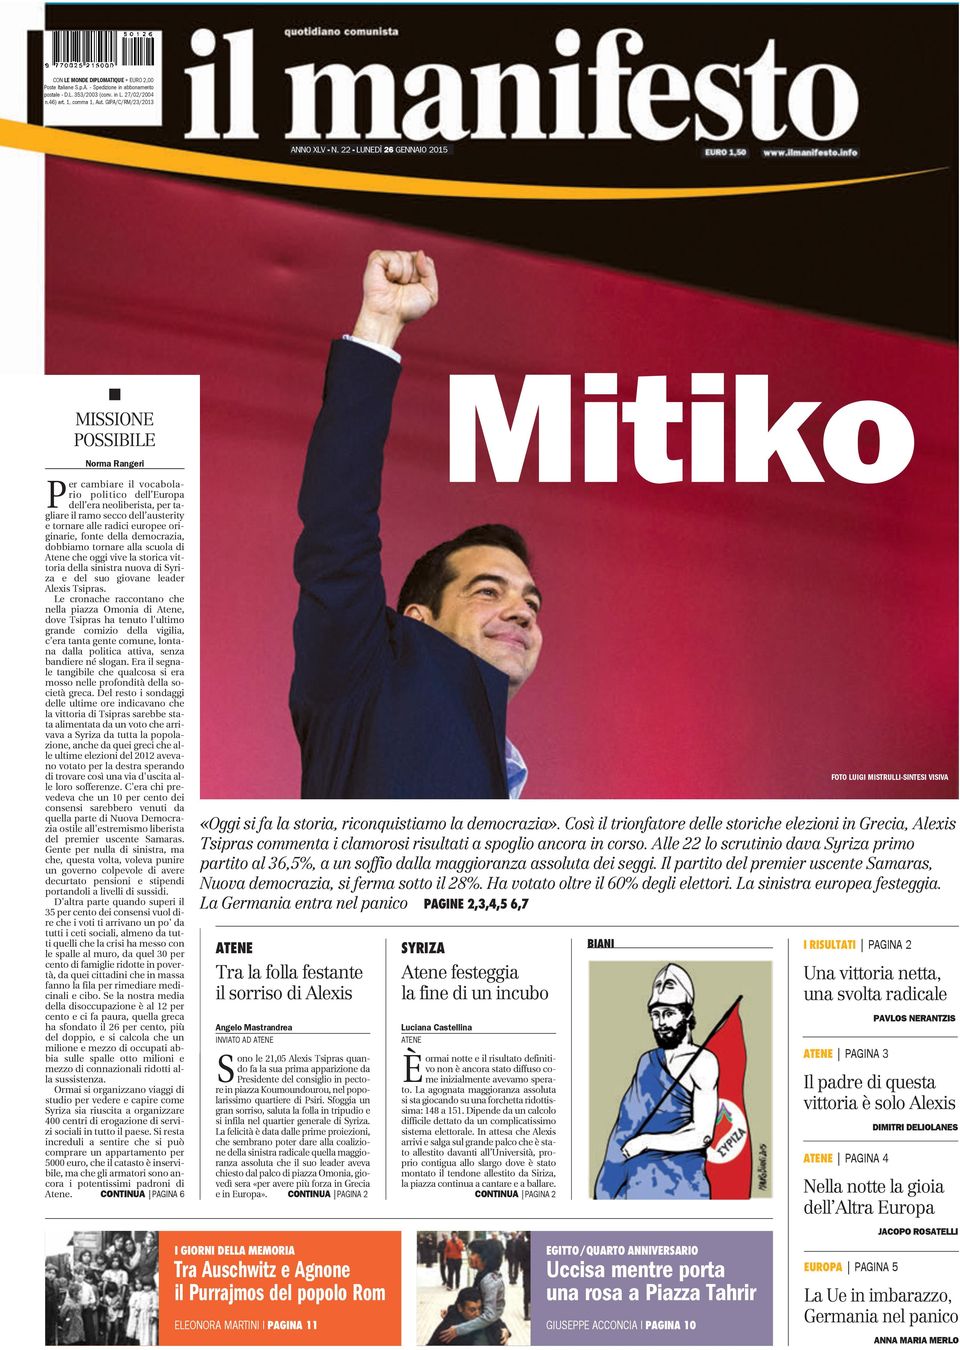 europee originarie, fonte della democrazia, dobbiamo tornare alla scuola di Atene che oggi vive la storica vittoria della sinistra nuova di Syriza e del suo giovane leader Alexis Tsipras.